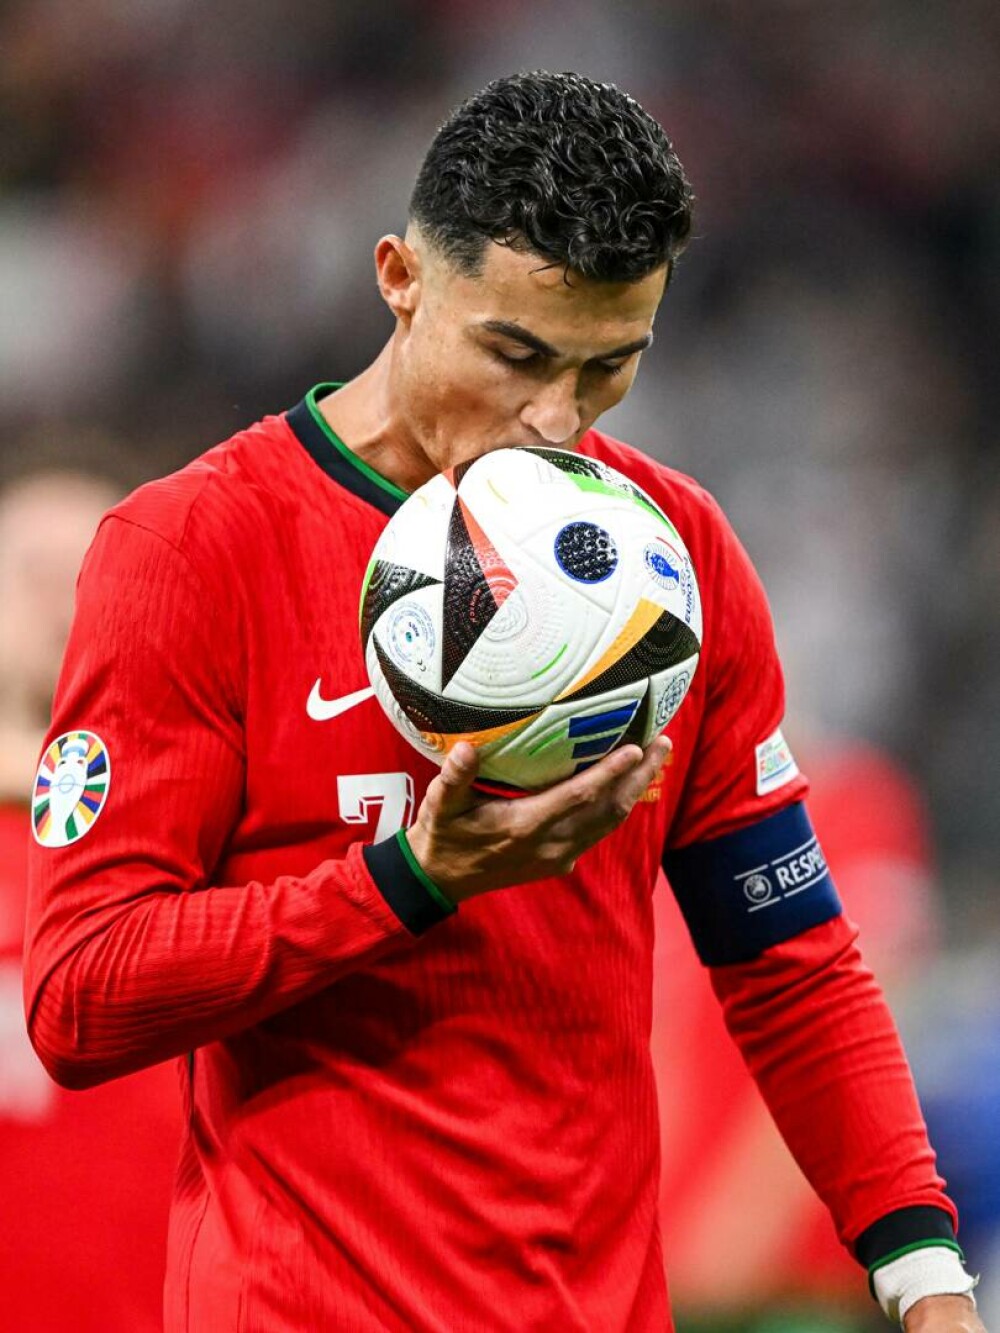 Cristiano Ronaldo a ratat un penalti la meciul Portugaliei cu Slovenia şi a izbucnit în plâns. FOTO&VIDEO - Imaginea 4